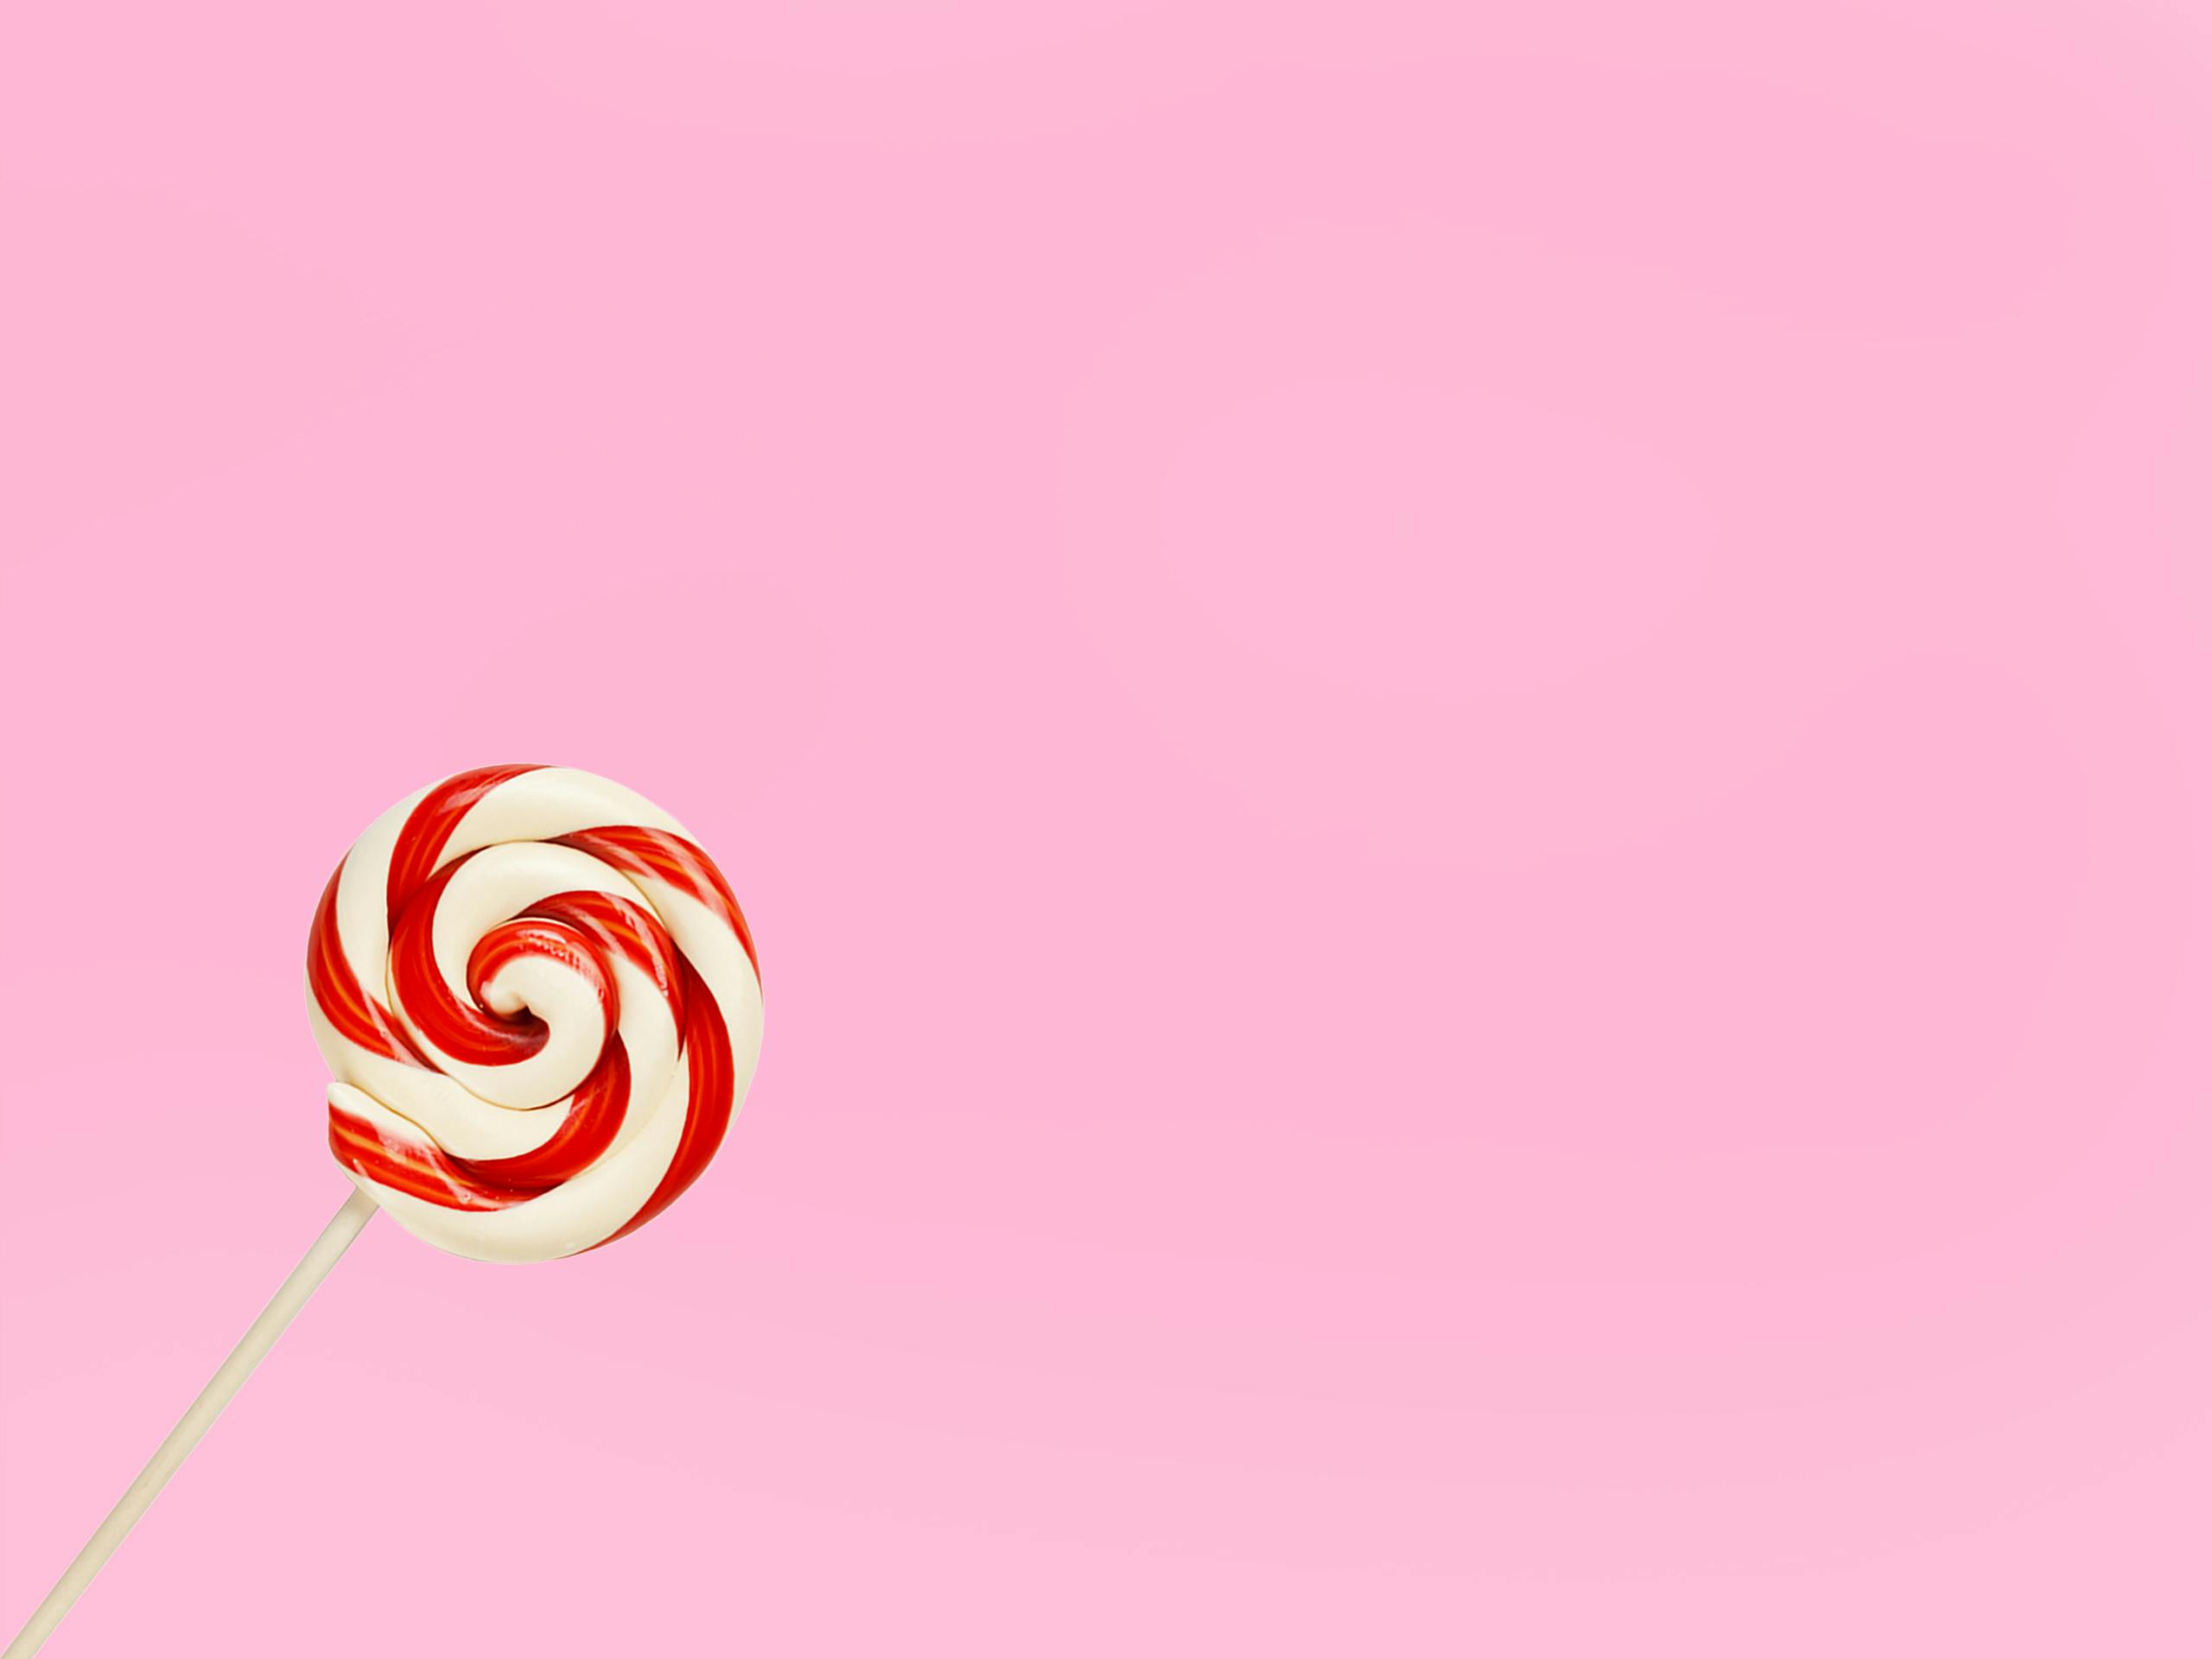 Lollipop Photos, Download The BEST Free Lollipop Stock Photos & HD Images